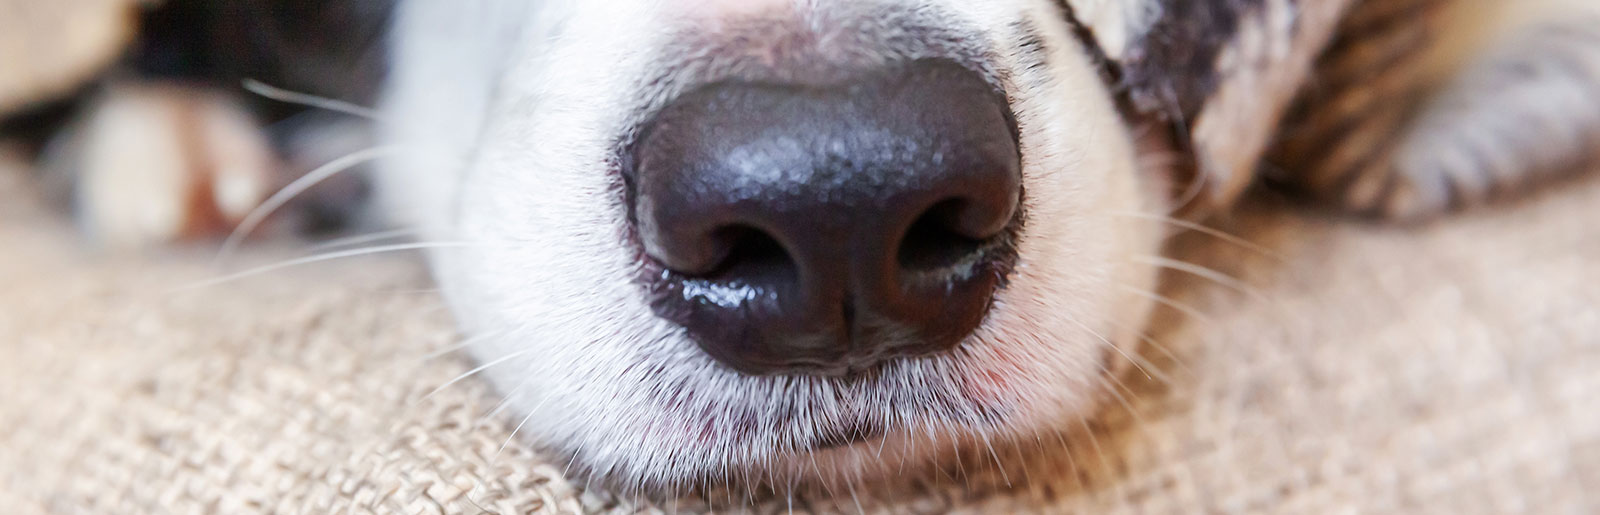 Hunde riechen ihre Umwelt, ihre Beute oder Futter, Feinde oder Gefahren sowie paarungsbereite Hundepartner